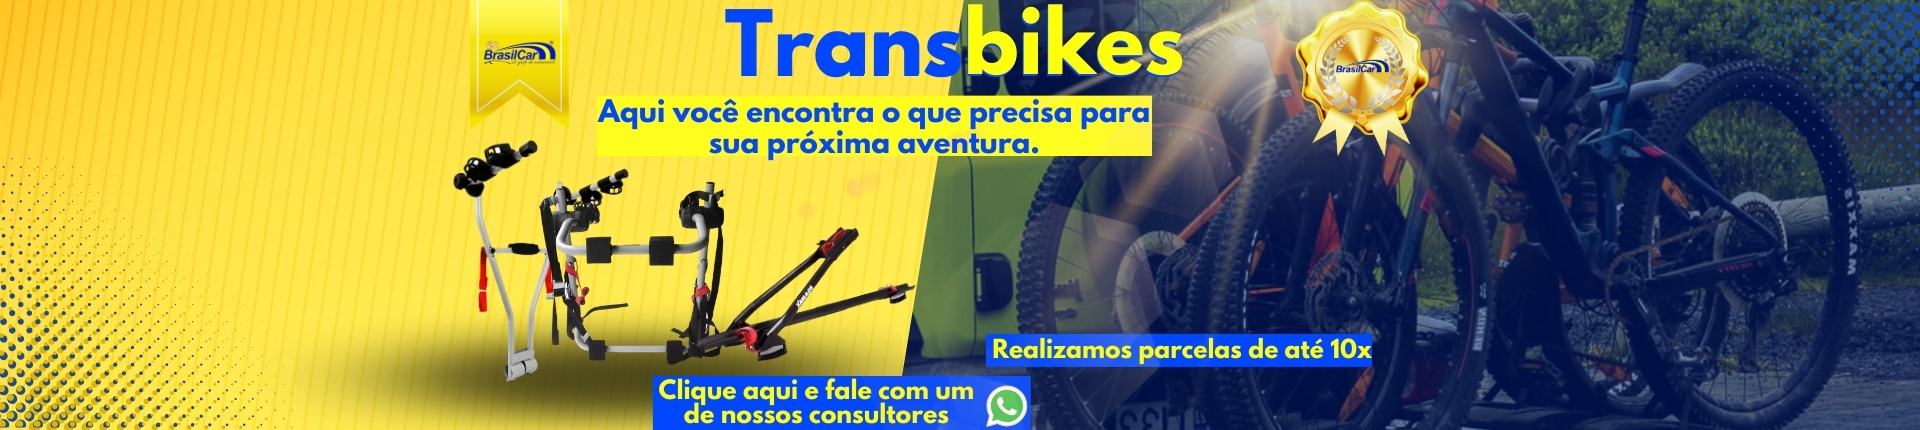 Transbike secundaria